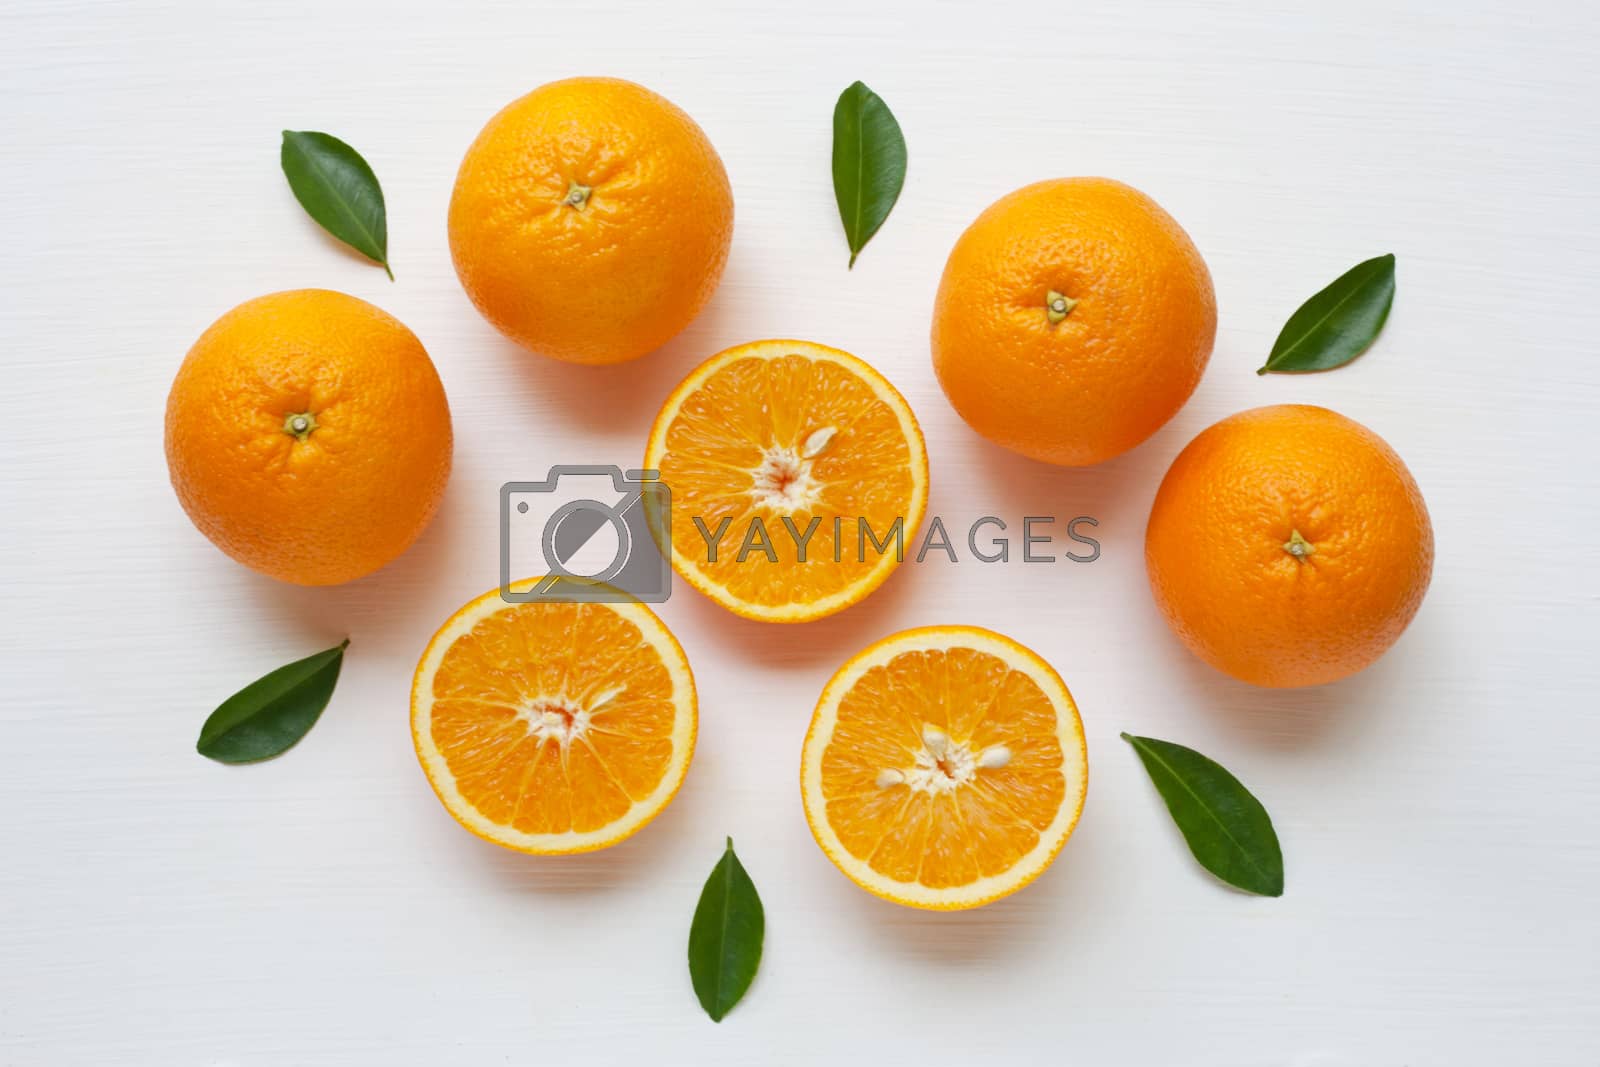 Royalty free image of Fresh orange citrus fruit isolated on white background.   by Bowonpat